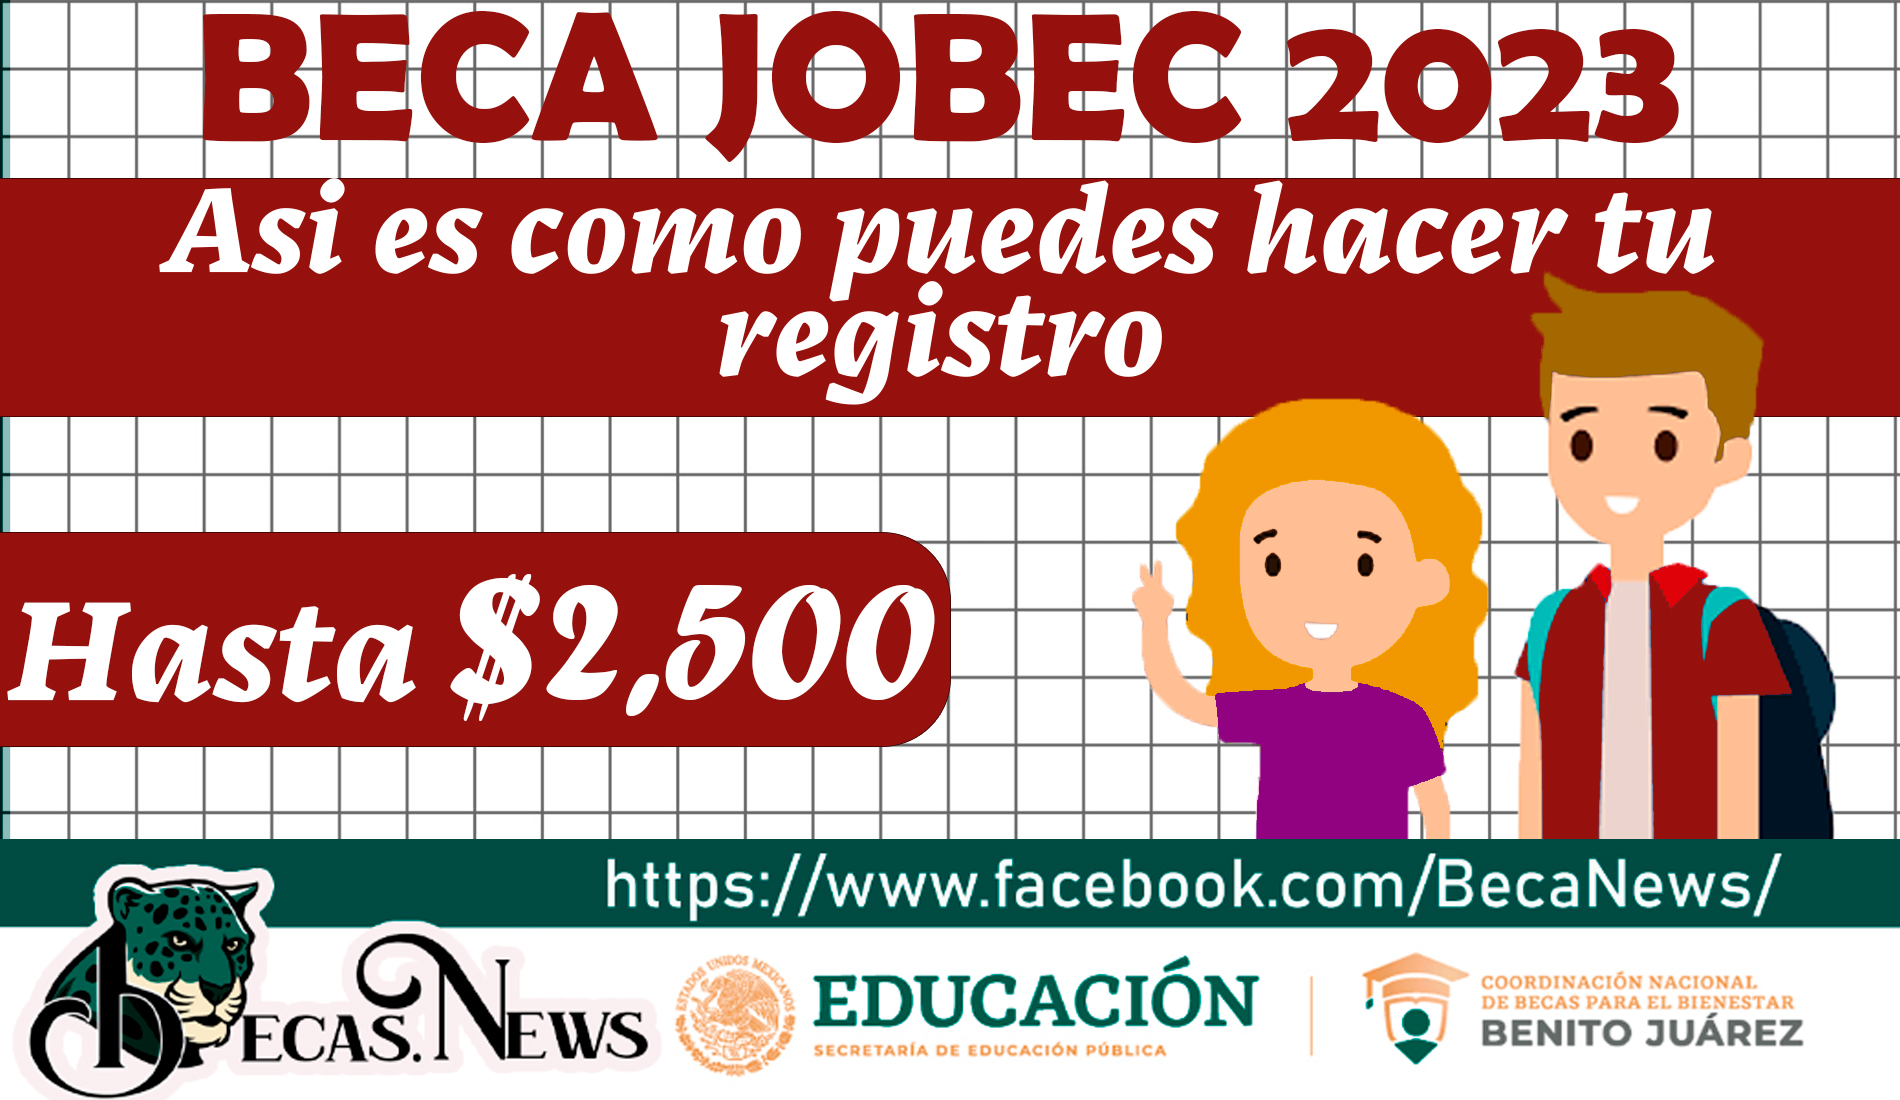 ¿Eres estudiante de prepa o universidad? Registrate a la Beca Jobec y recibe un apoyo economico de $2,500